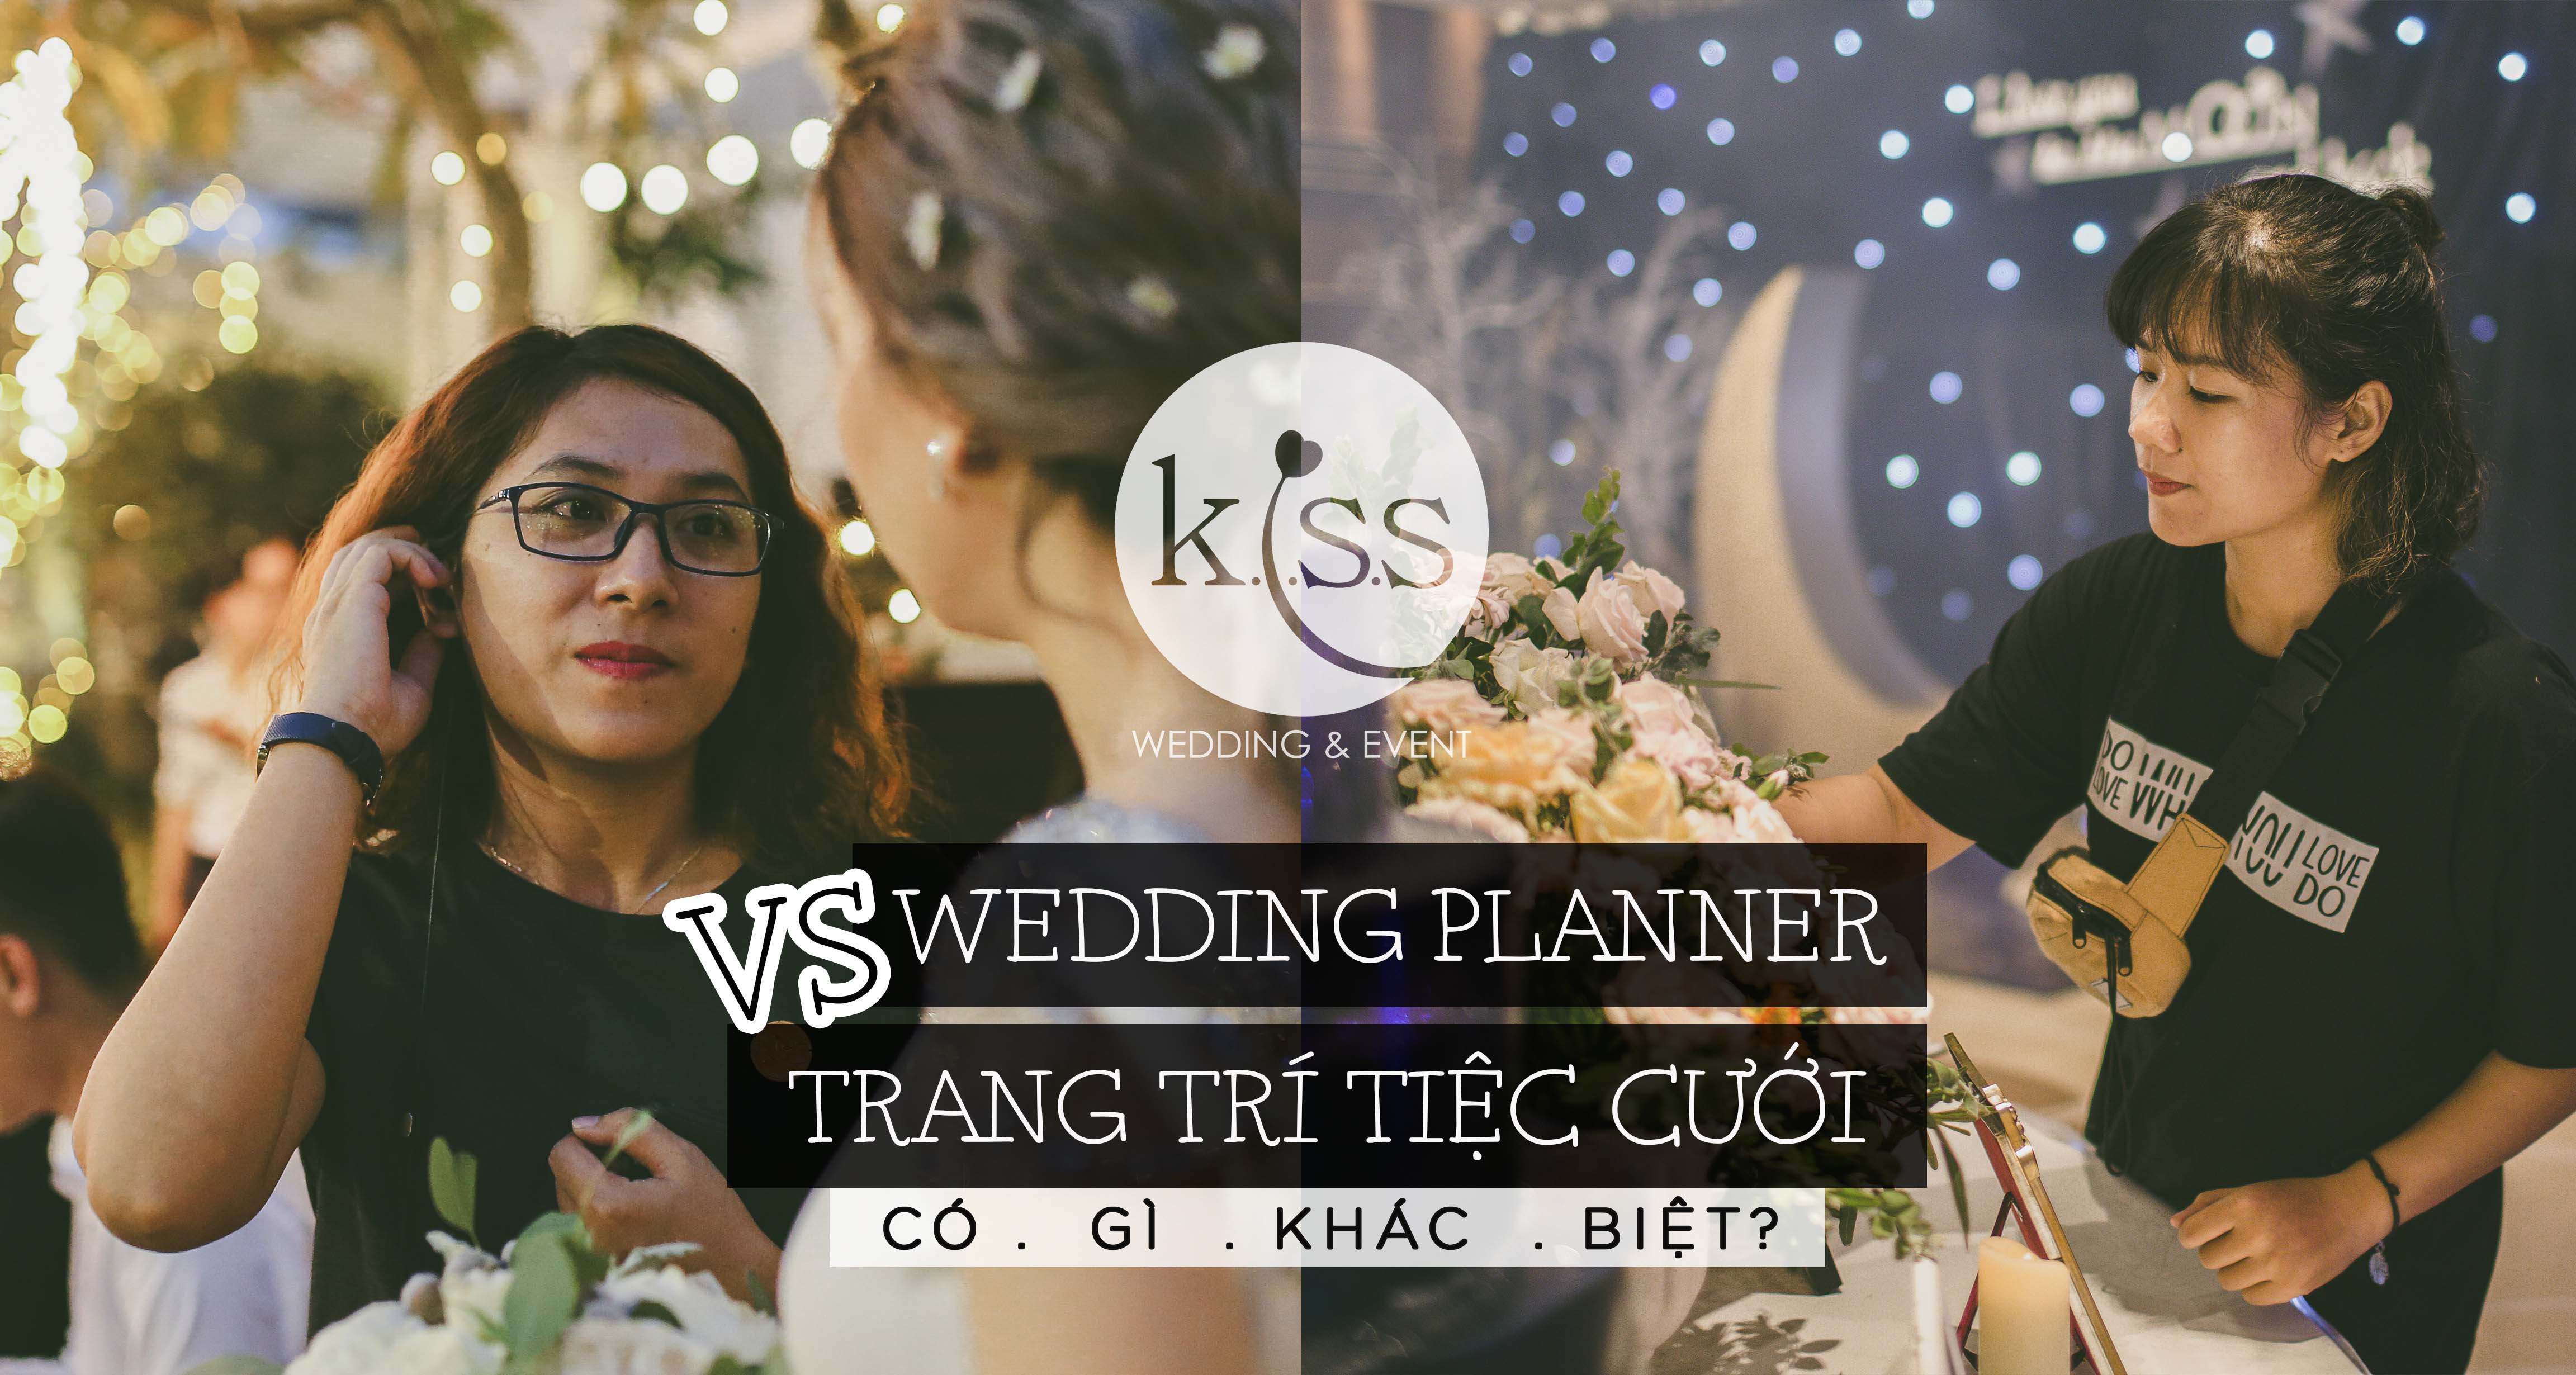 Wedding Planner VS Trang trí tiệc cưới - KISS WEDDING PLANNER